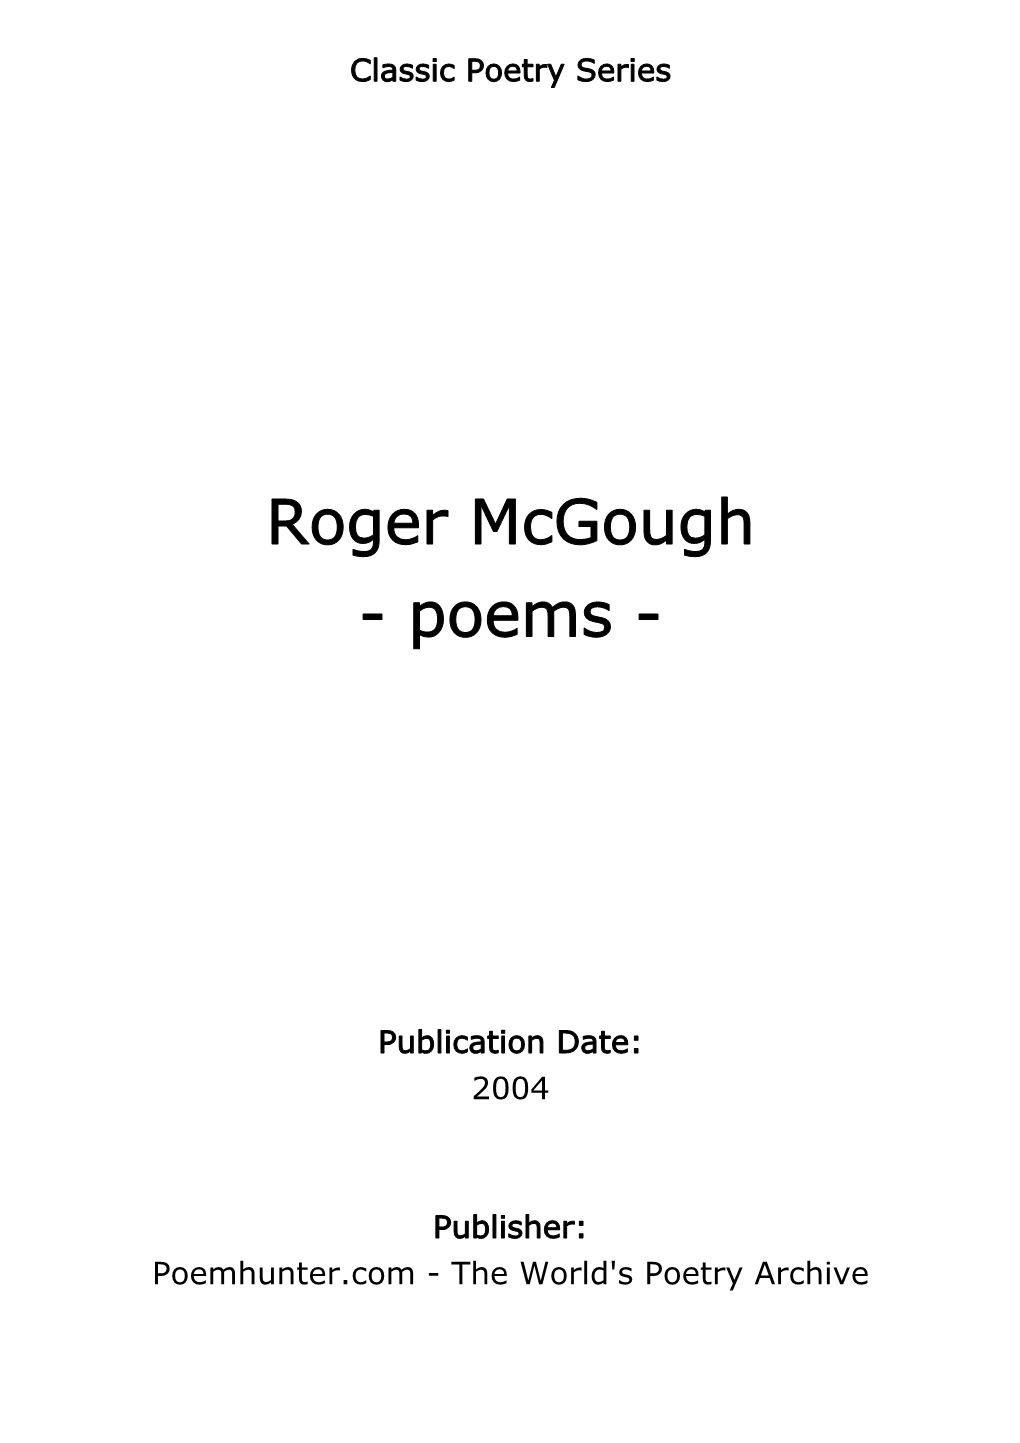 Roger Mcgough - Poems